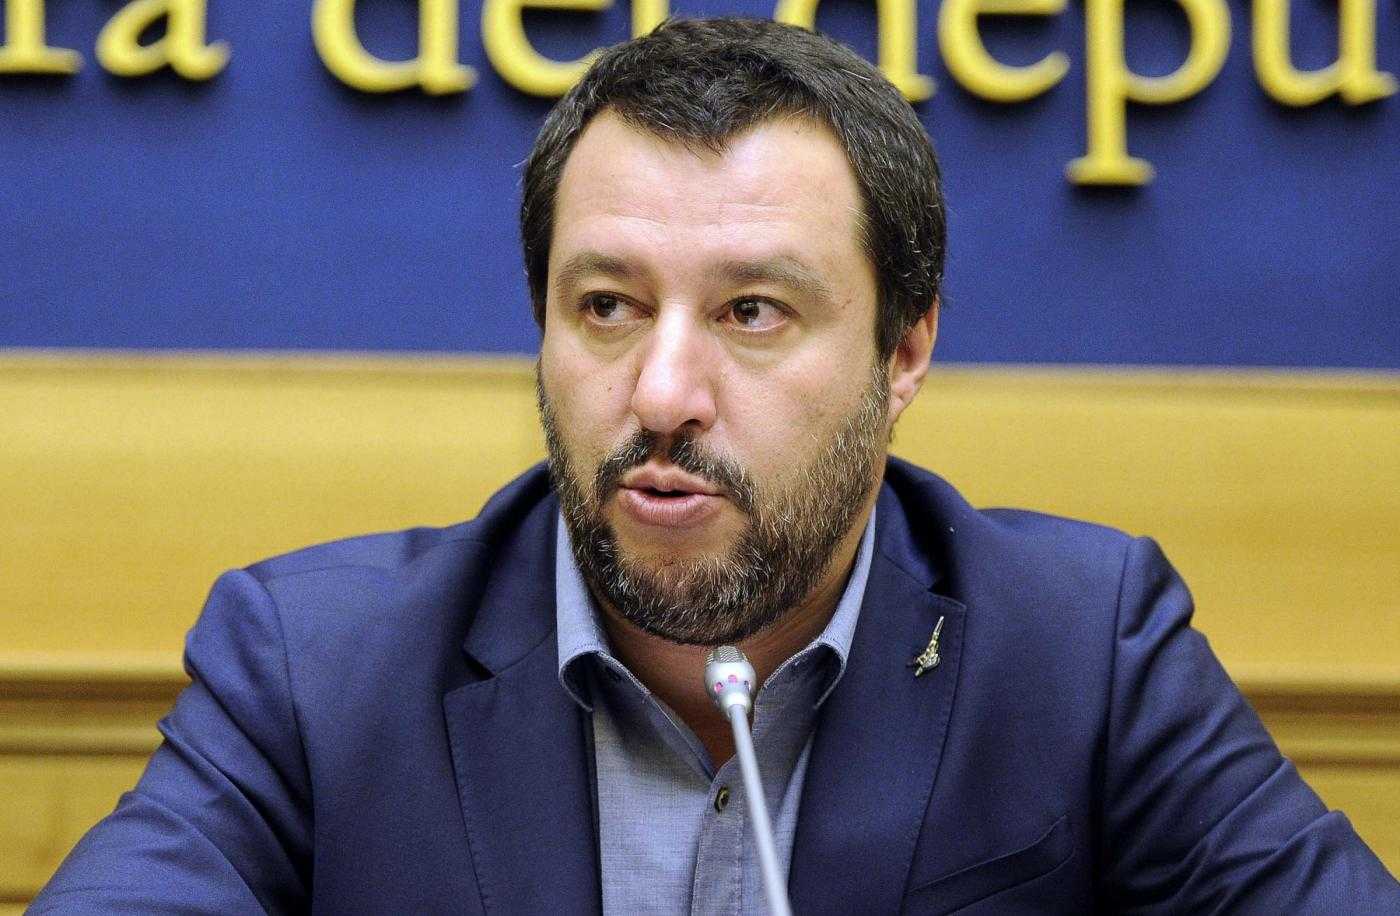 Violenza negli stadi, Salvini: “sradicare violenza con ogni mezzo”